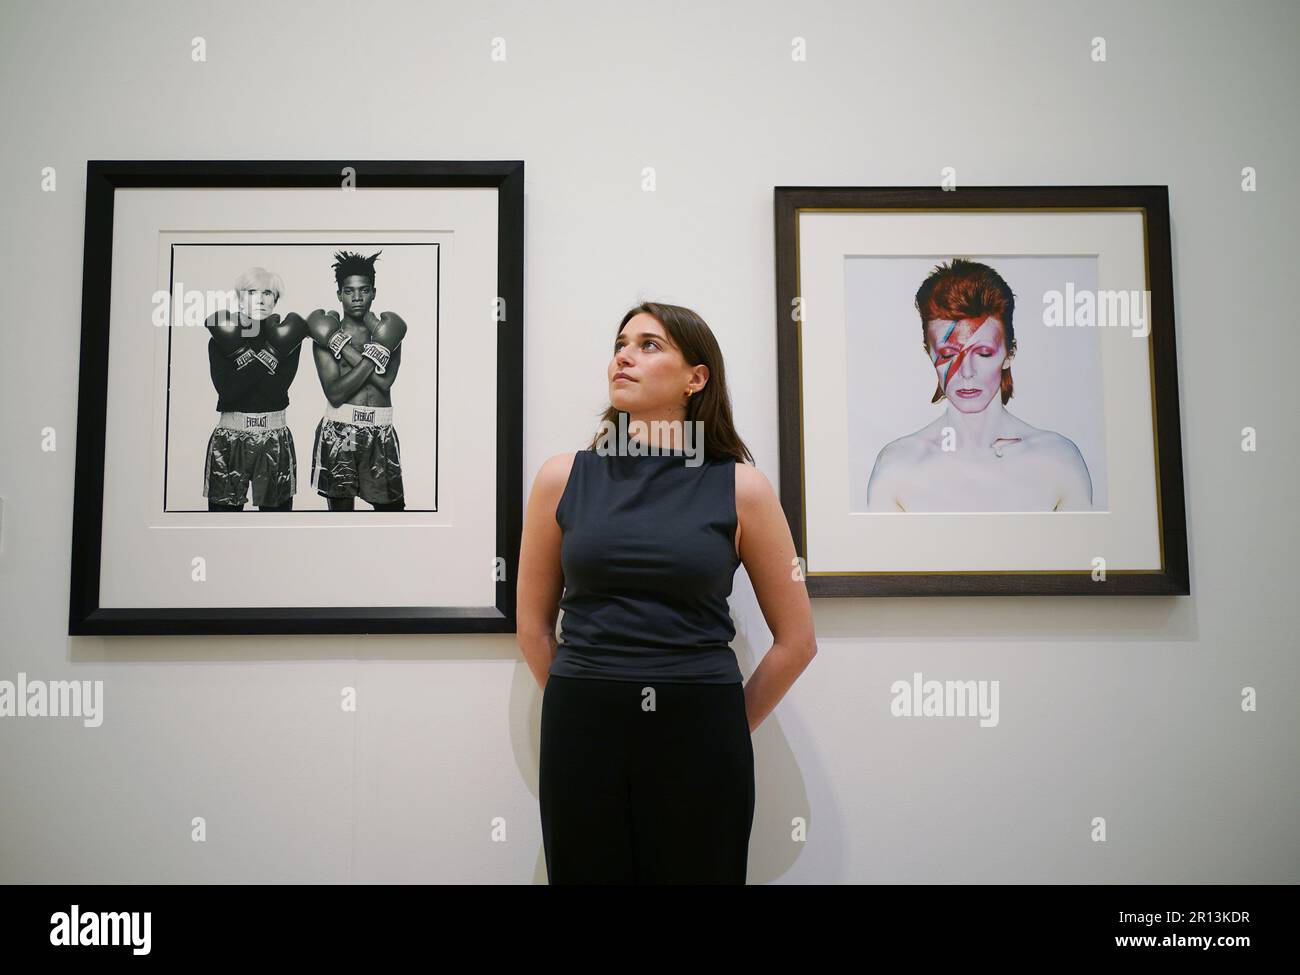 Un membro del personale della galleria posa accanto alle fotografie di (a sinistra) Michael Halsband, Andy Warhol + Jean-Michel Basquiat #143, New York City, 10th luglio 1985, con una stima di £20.000-30.000, E Brian Duffy, David Bowie, 1973 anni, con una stima di £ 7.000-9.000, in mostra a Phillips, Londra, durante una telefonata fotografica per una collezione privata di opere di fotografi del 20th e del 21st ° secolo, prima di essere offerti per la vendita dalla casa d'aste. Data immagine: Giovedì 11 maggio 2023. Foto Stock